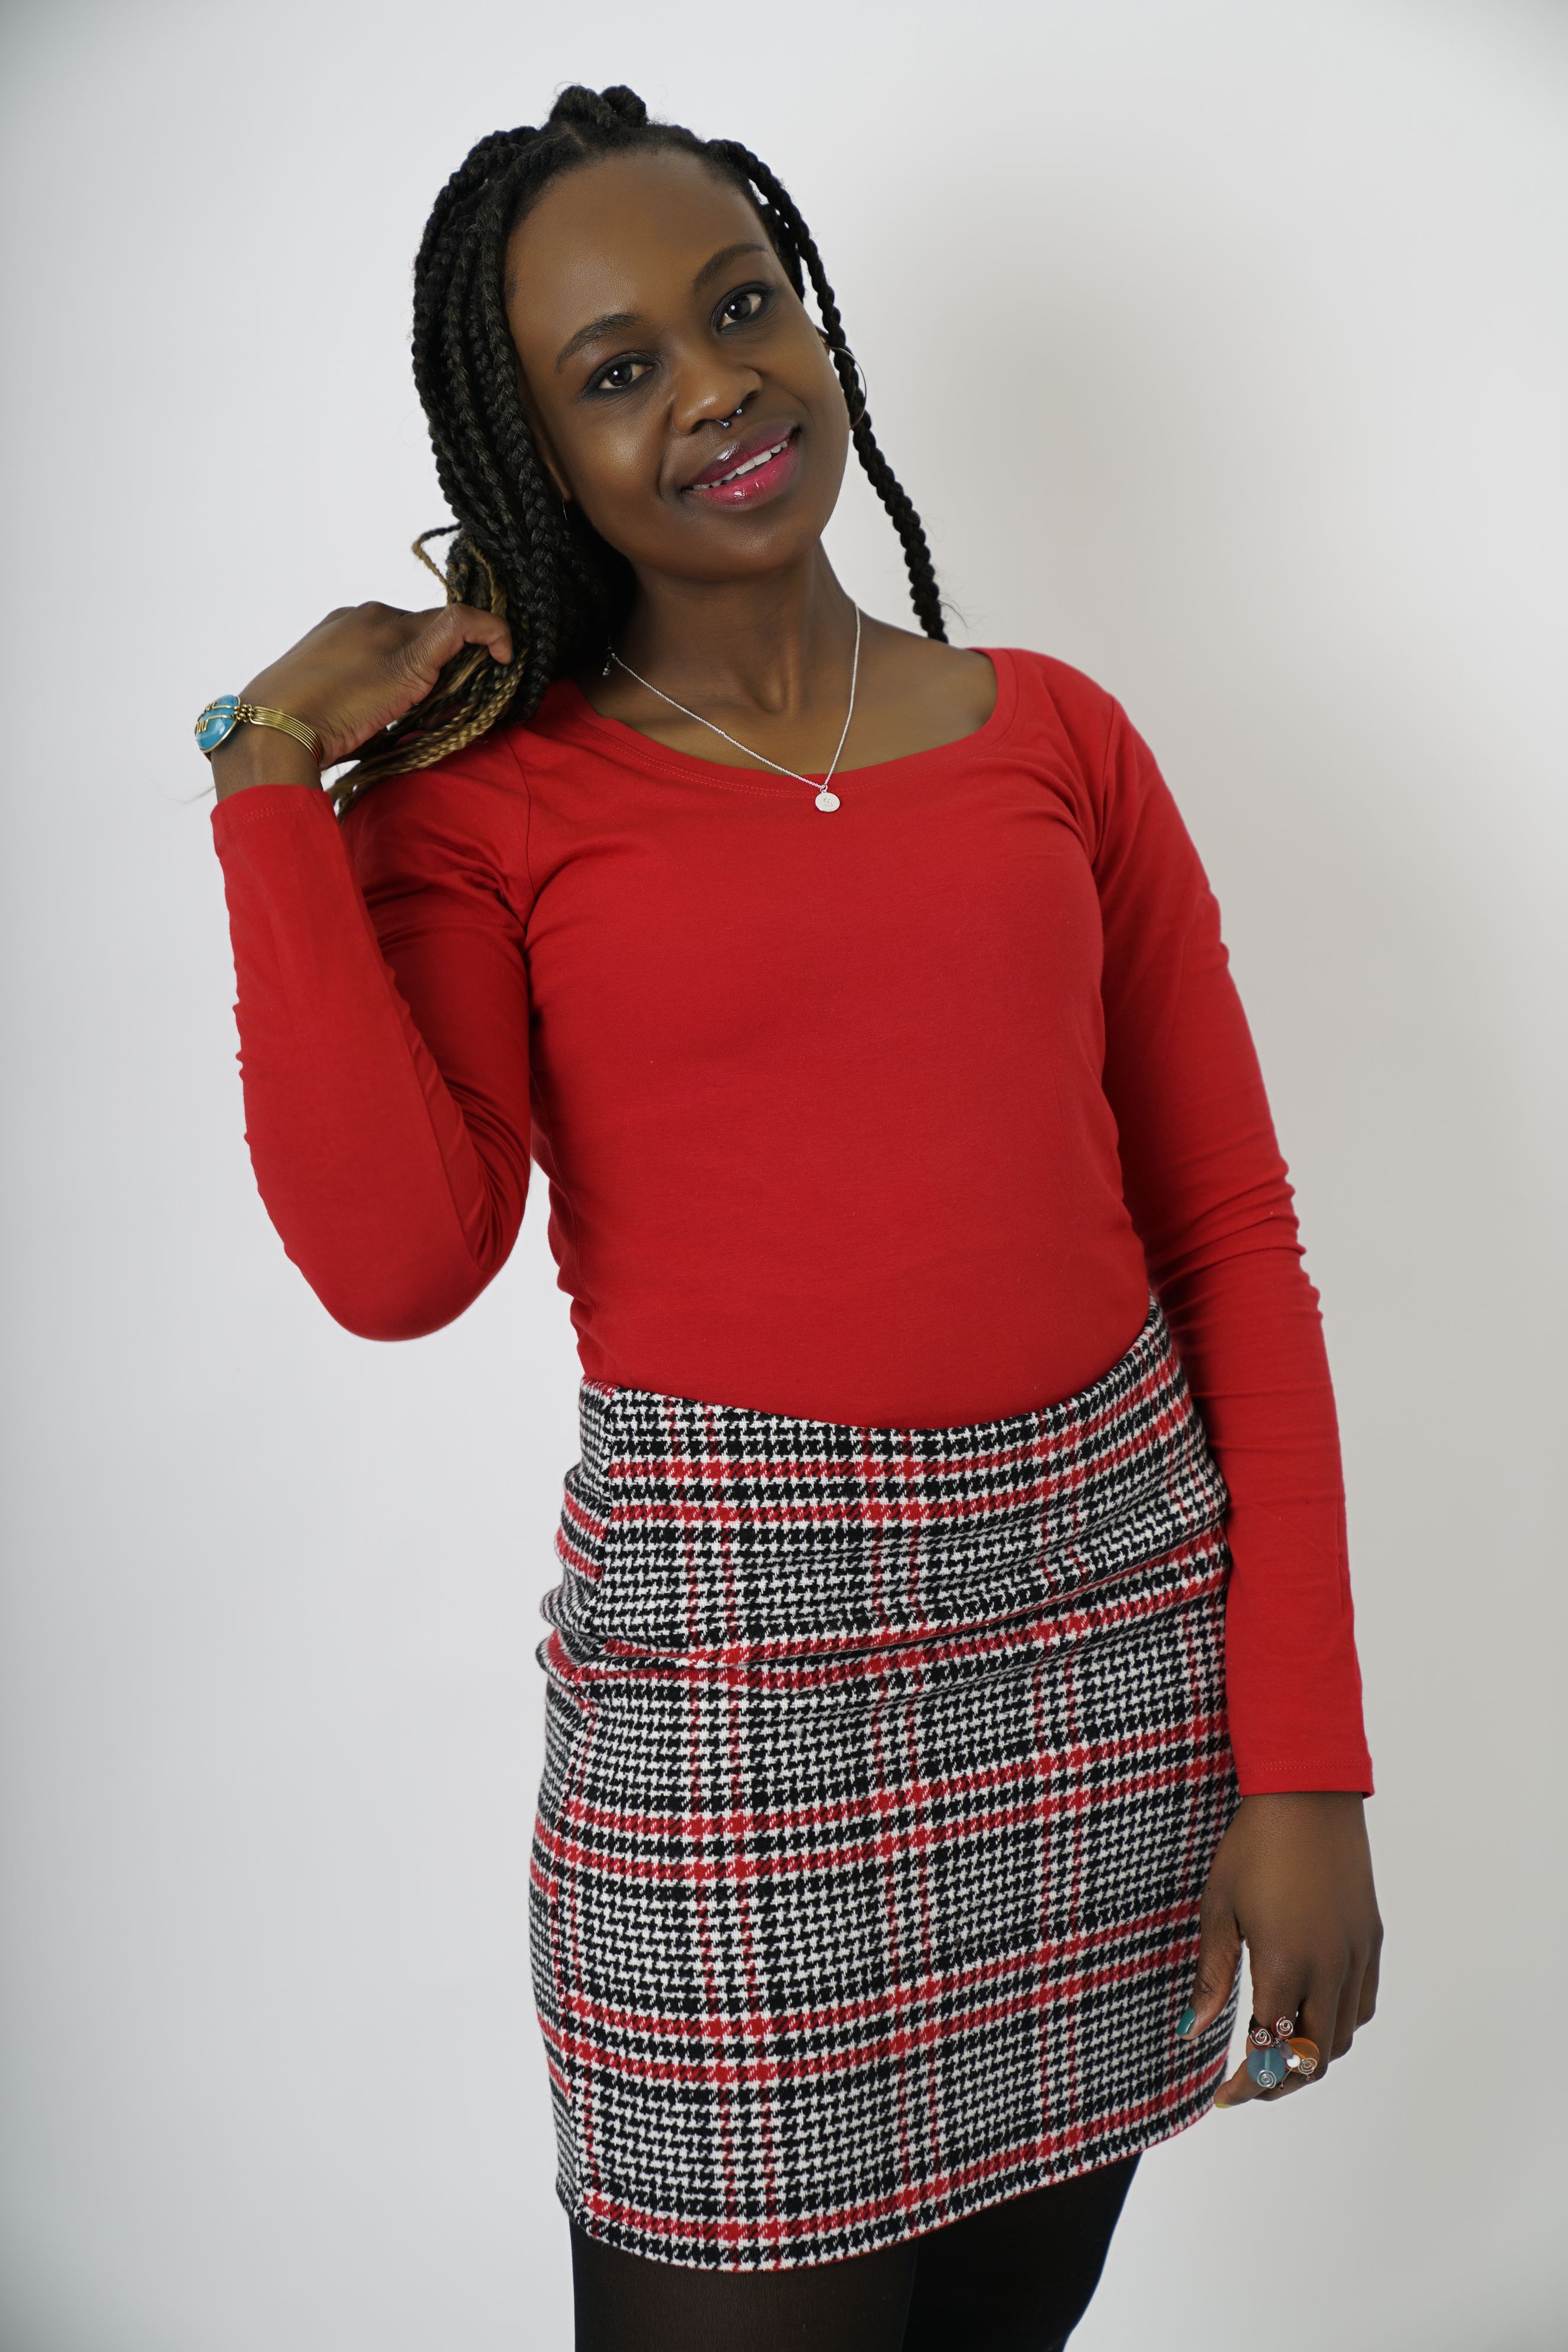 Thotloetso Samane Matebesi Profile | YUMM - Your Model Management